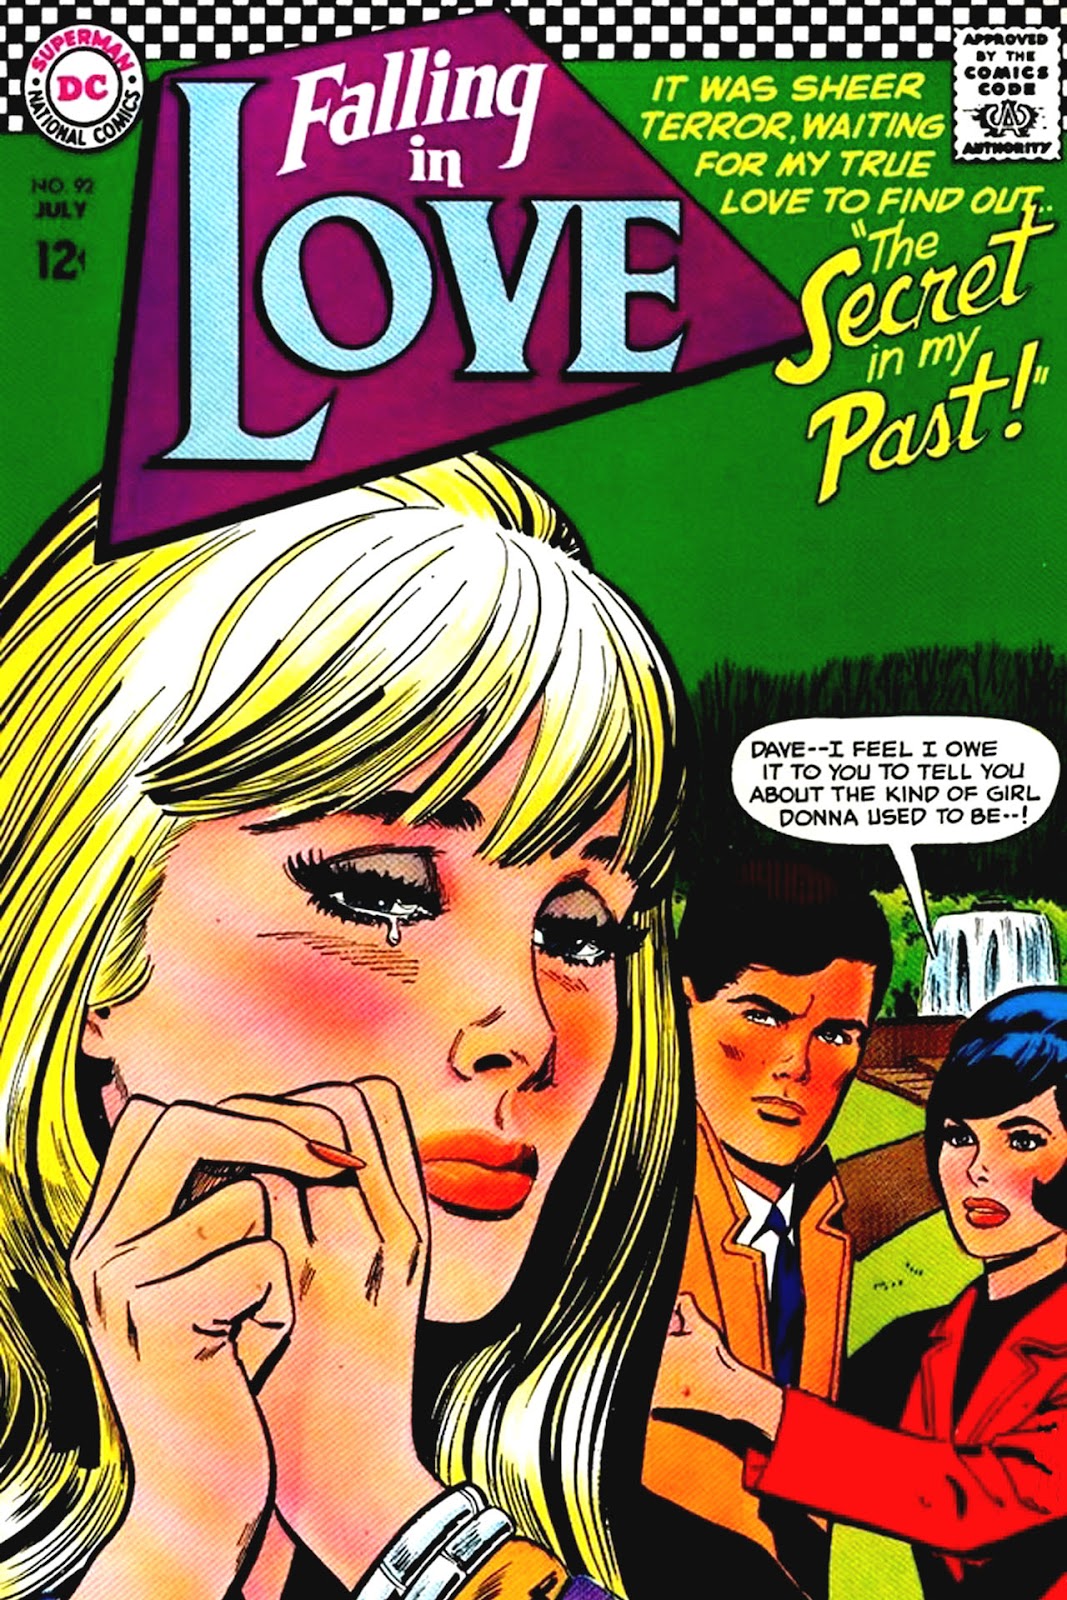 Issue love. Любовные комиксы. Falling in Love комикс. Falling in Love ups обложка. Mans best (1961-1967 Normandy Associates) читать комикс.